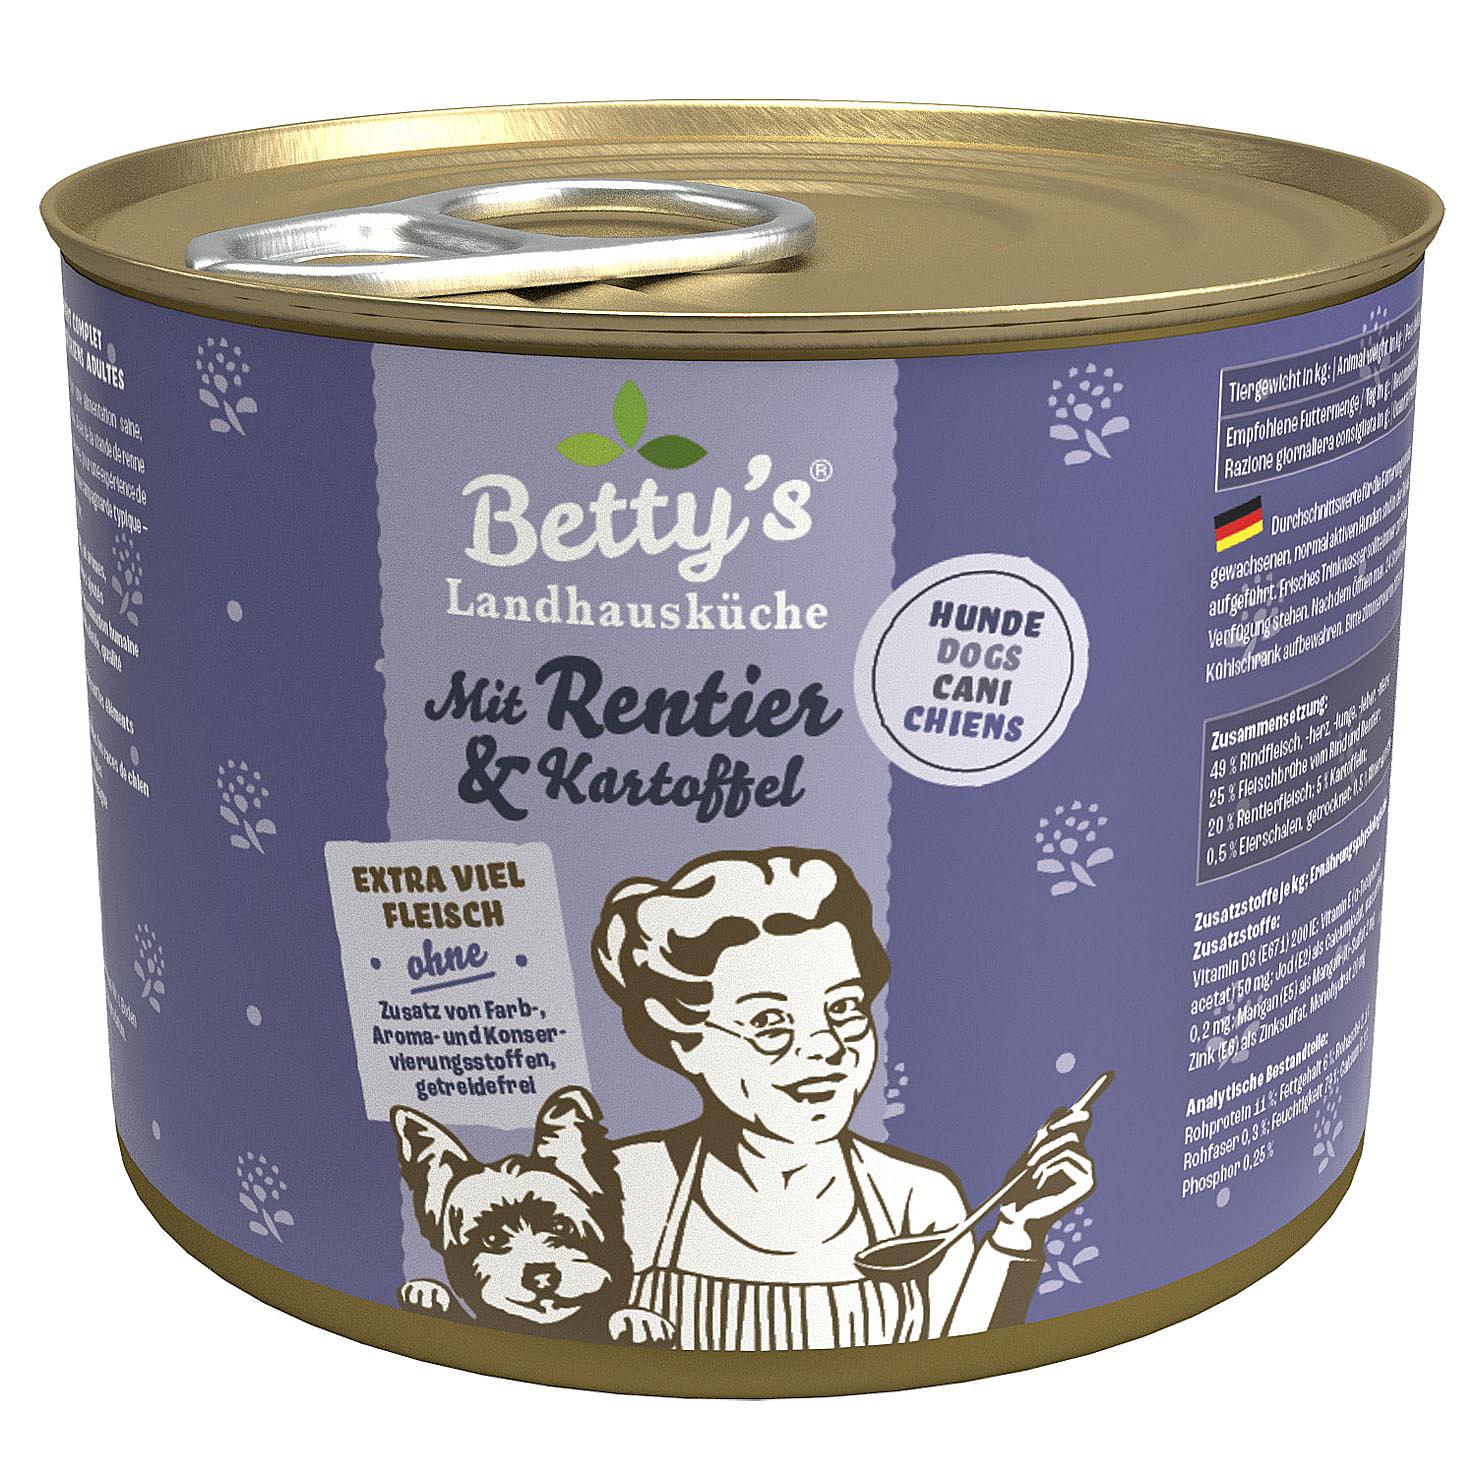 Betty's Landhausküche Rentier & Kartoffel 200g